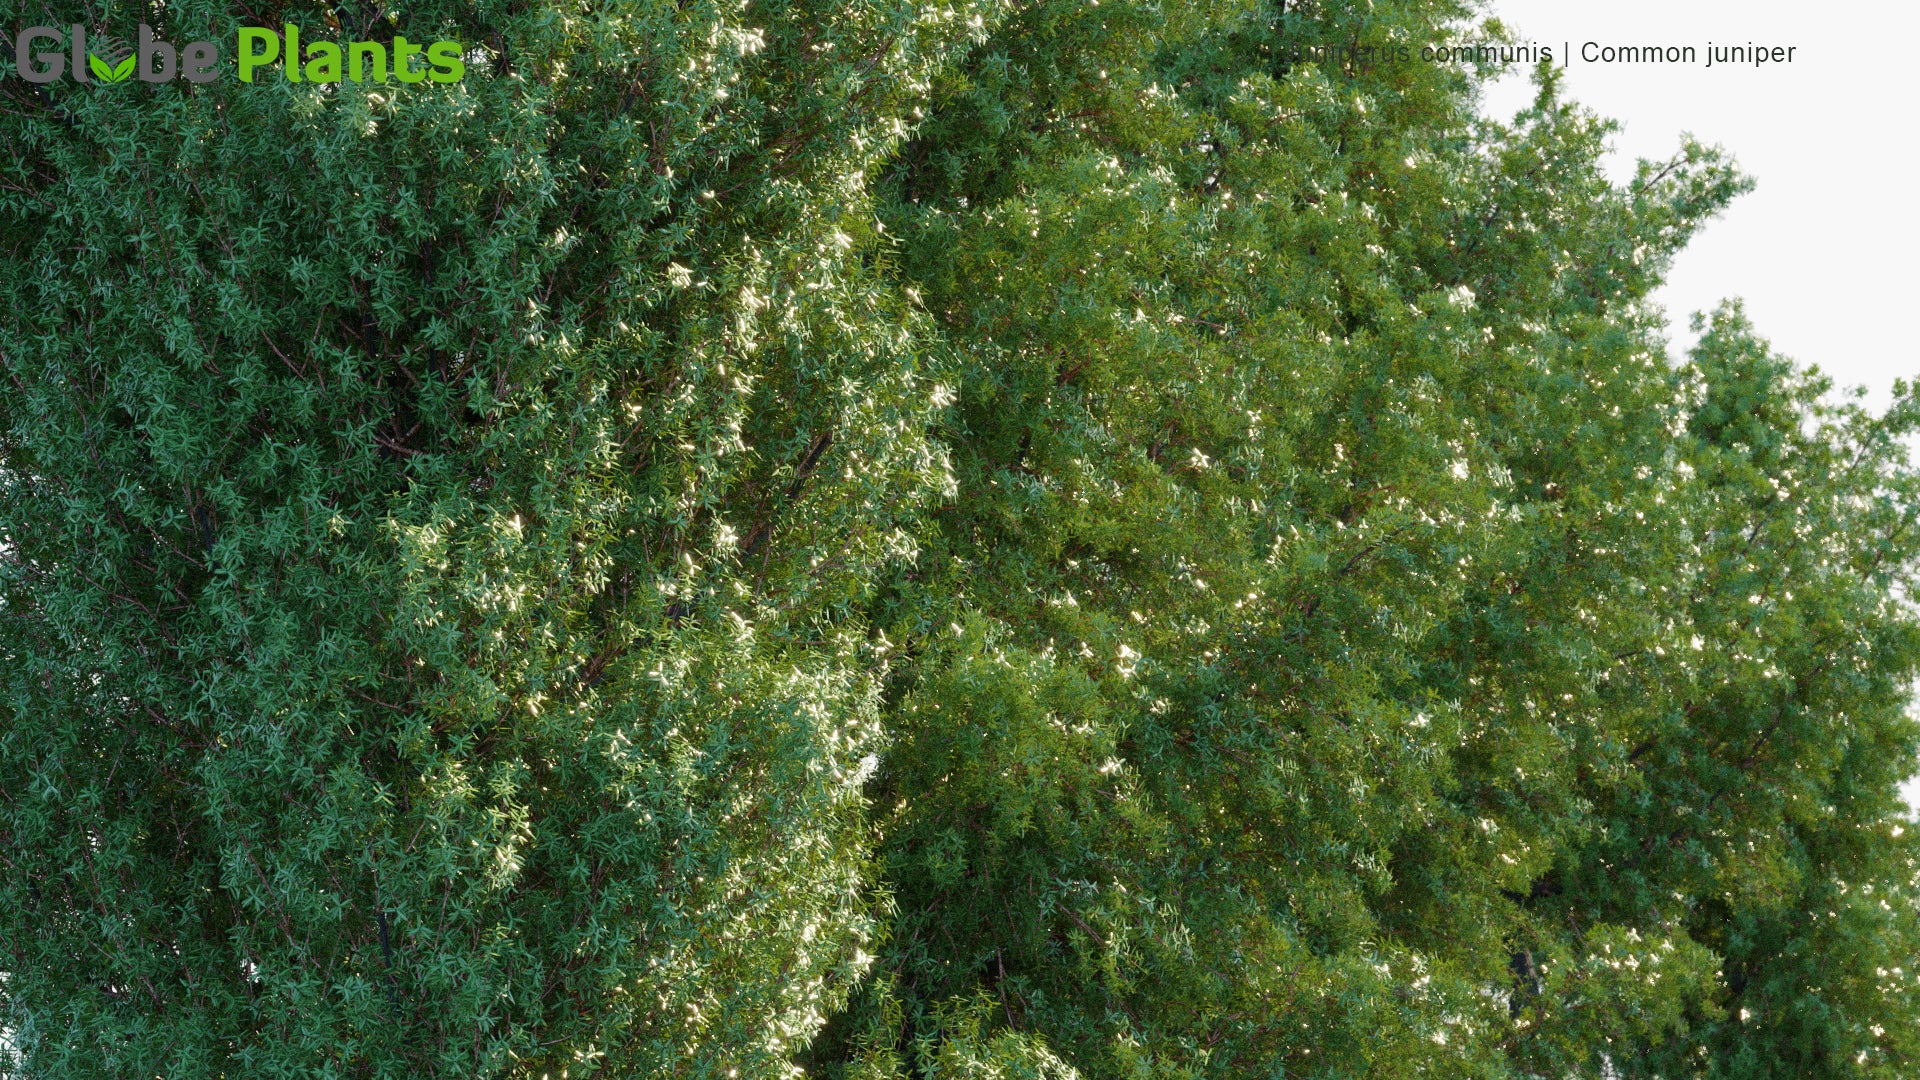 Juniperus Communis - Common Juniper